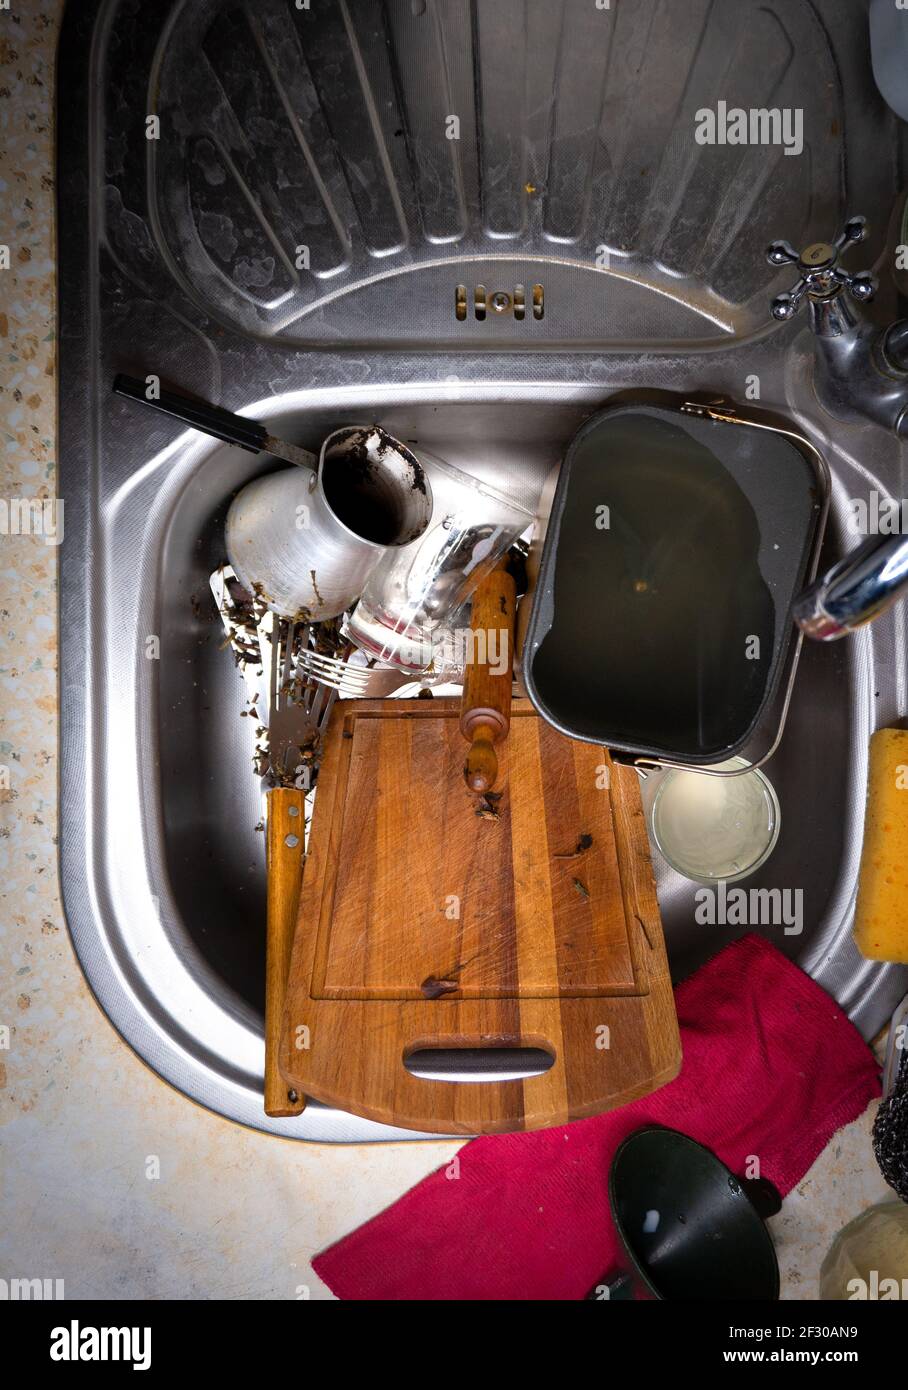 Viel schmutziges Geschirr und ein Durcheinander in der Spülbecken in der Küche Stockfoto